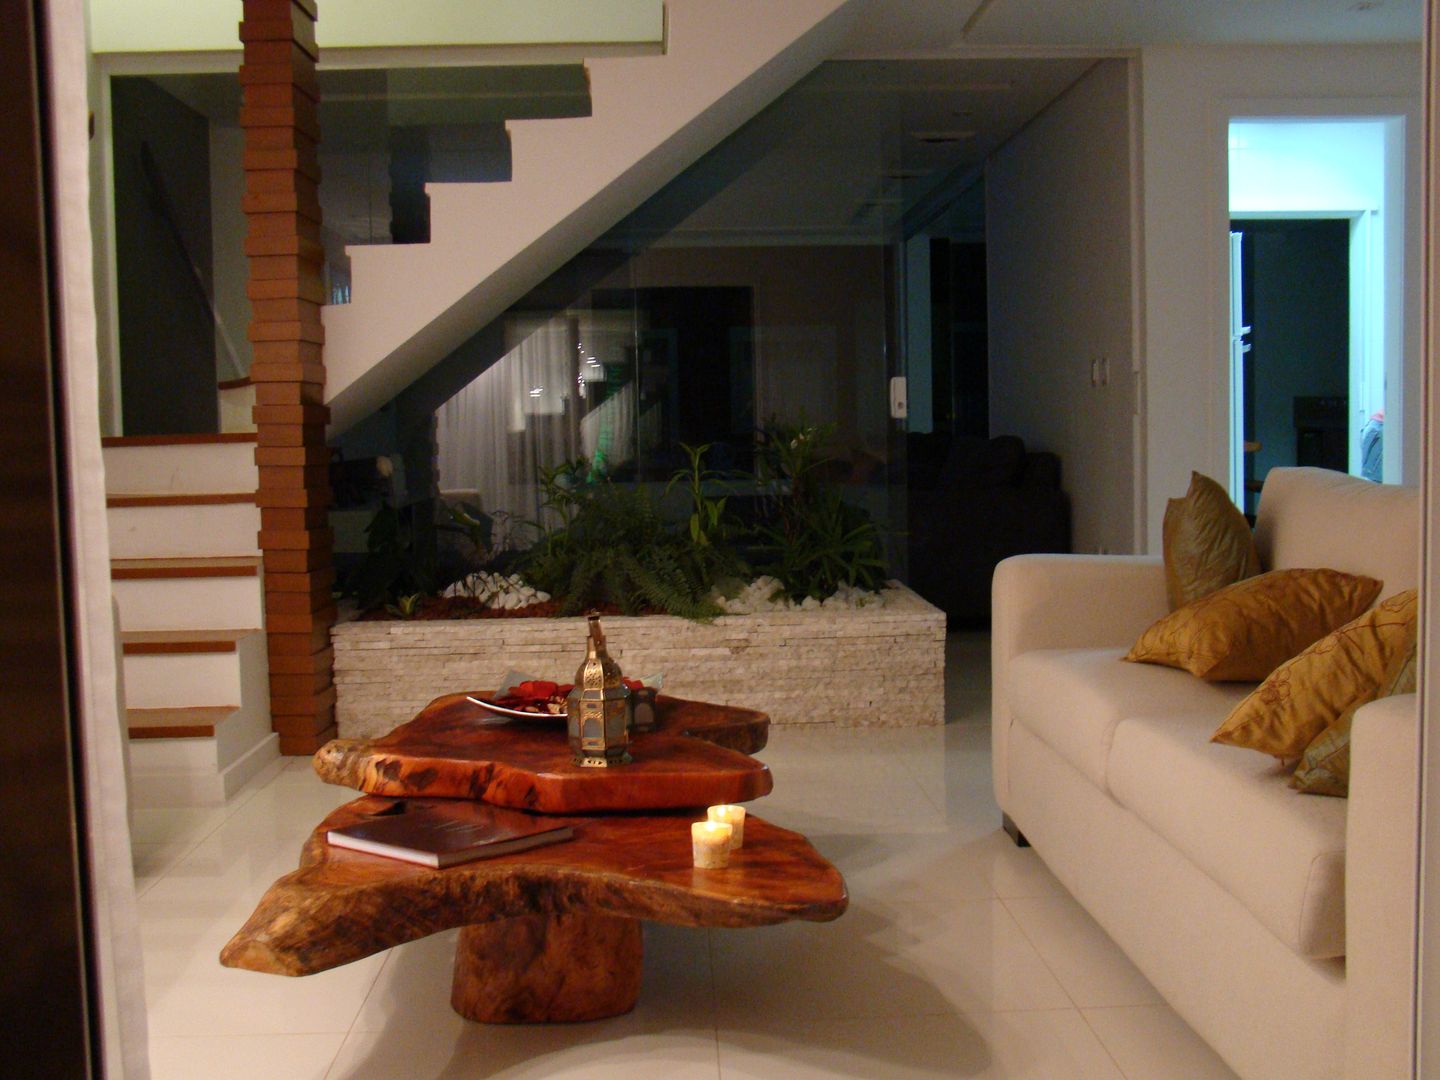 Residência de Praia, Tupinanquim Arquitetura Brasilis Tupinanquim Arquitetura Brasilis Rustic style living room